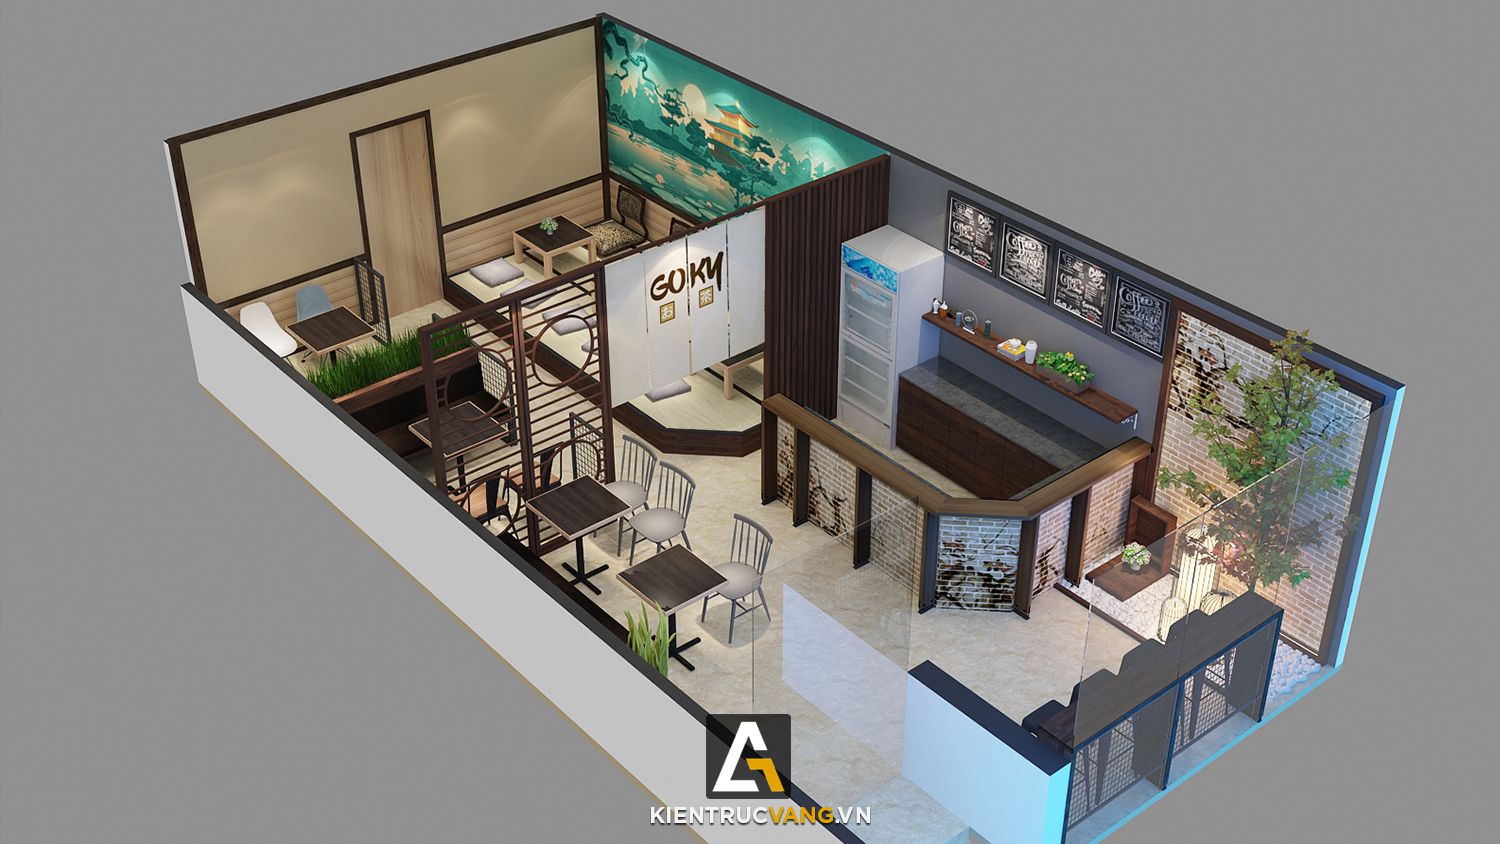 Thiết kế nội thất Cafe tại Hà Nội Thiết kế quán trà sữa Goky, chi nhánh Trung Kính 1616668923 0